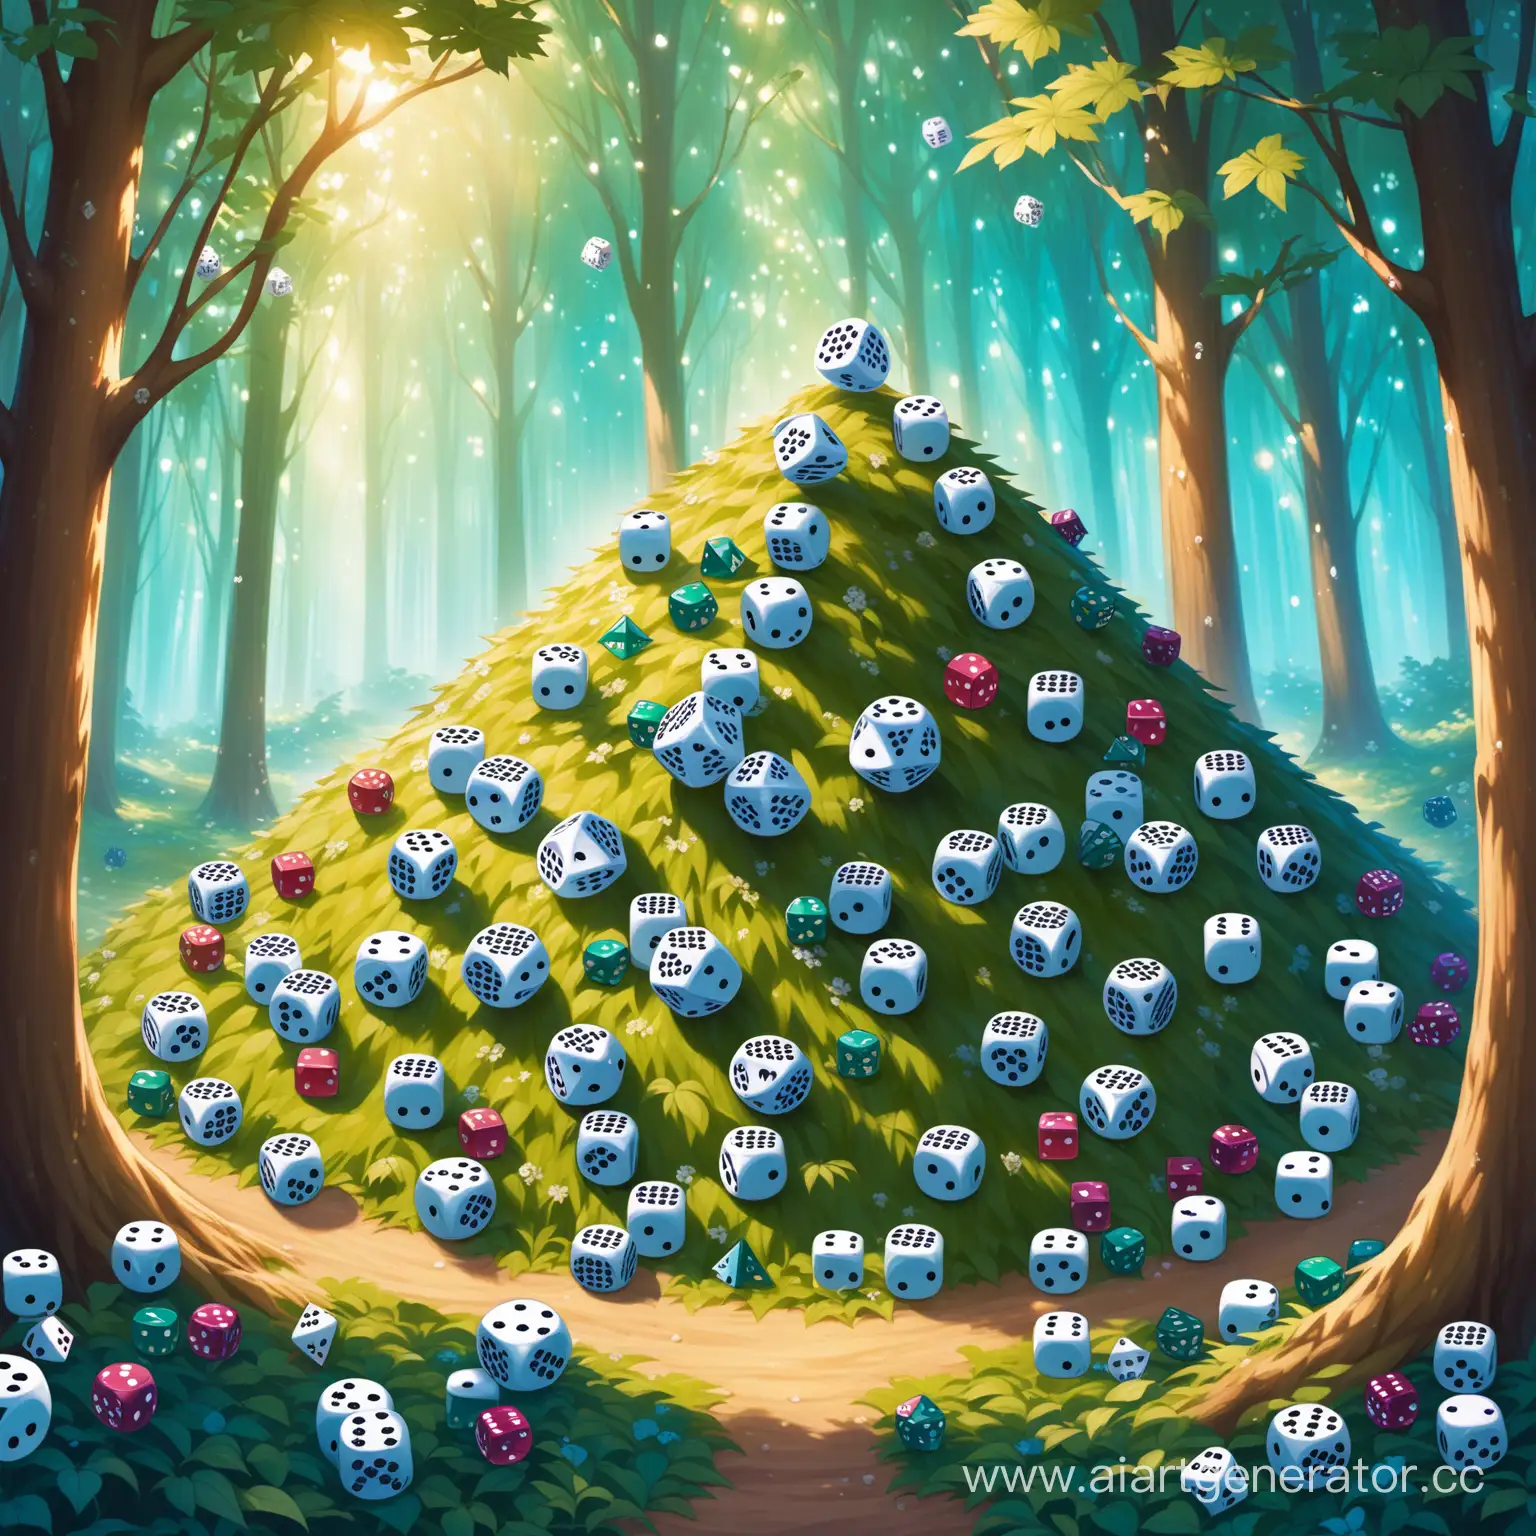 Большая кучка игральных кубов лежит в лесу а вокруг неё ходят волшебные существа
